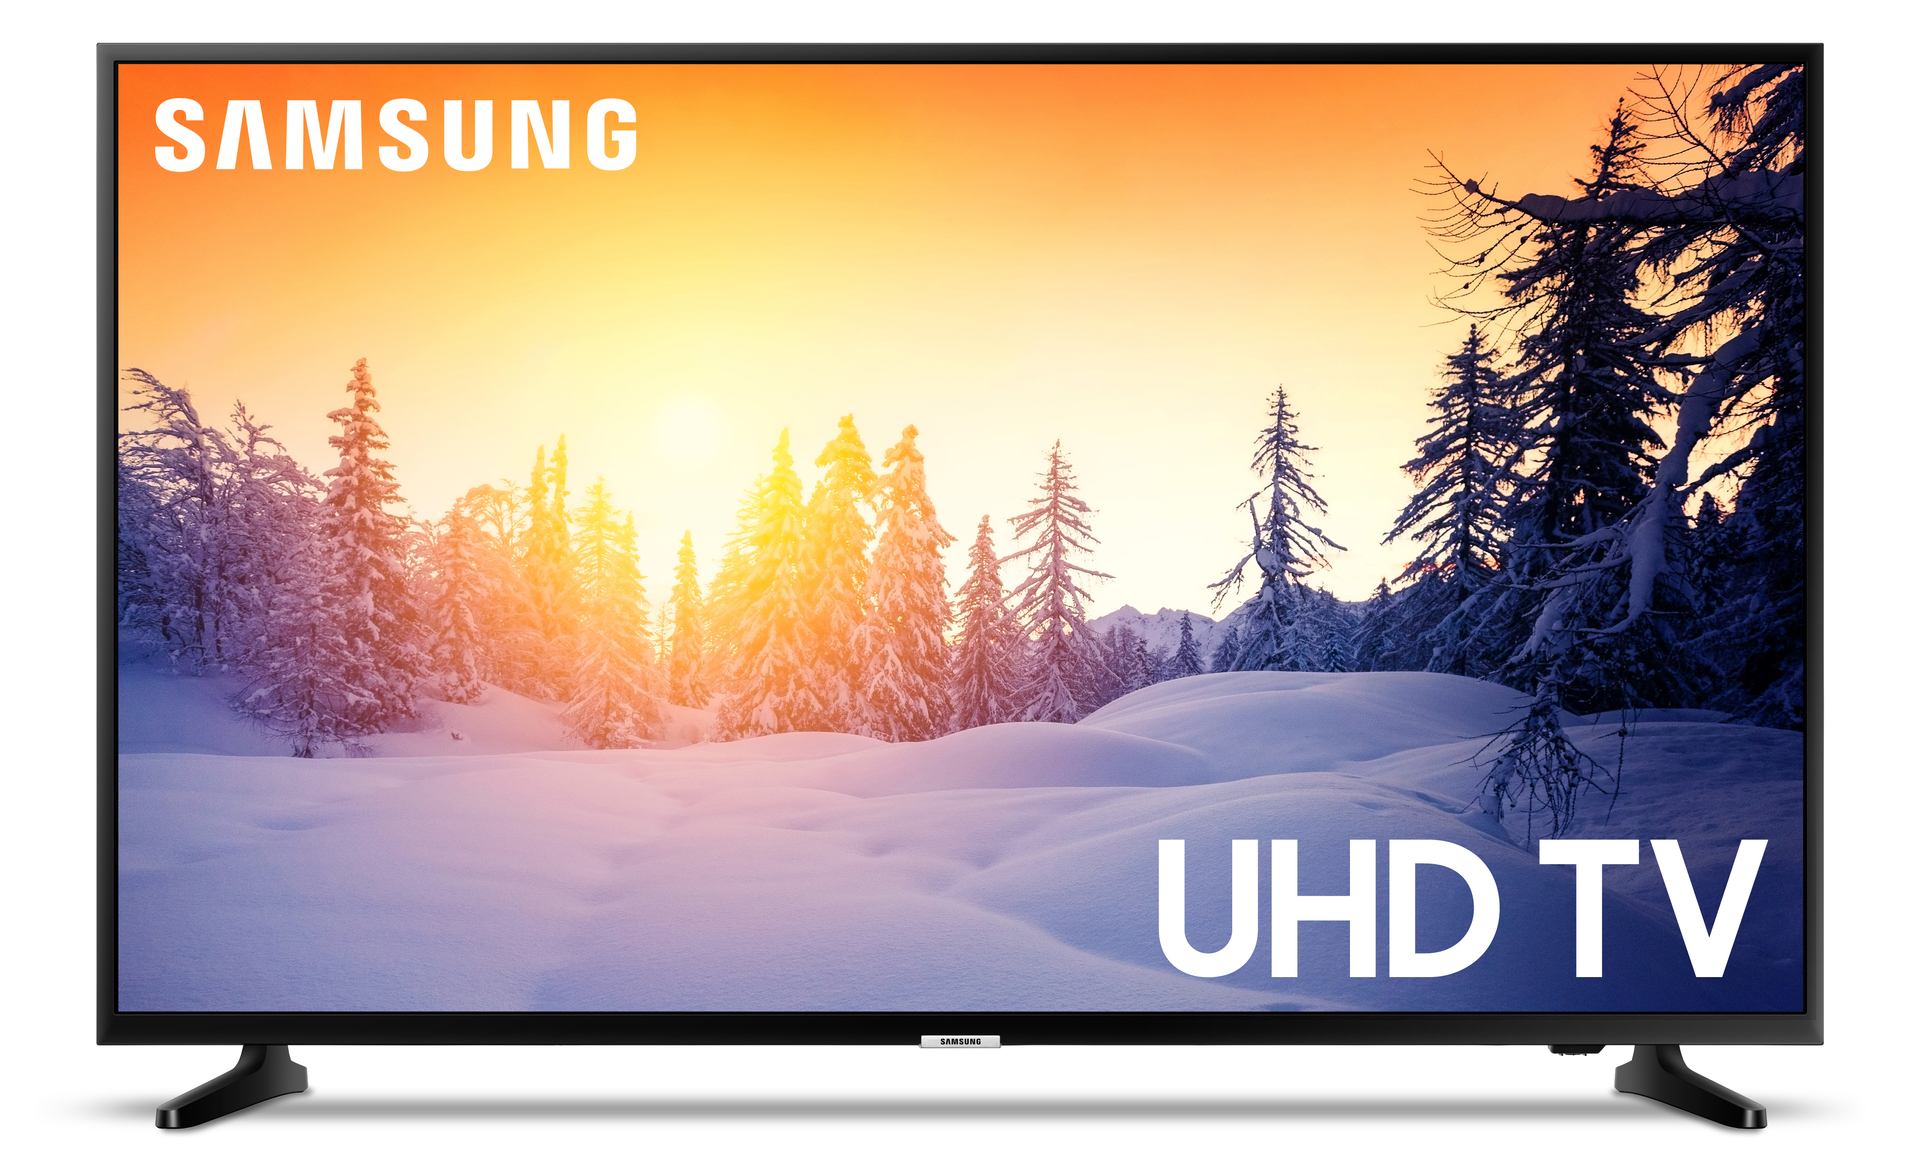 Samsung 43-inch LED Smart TV